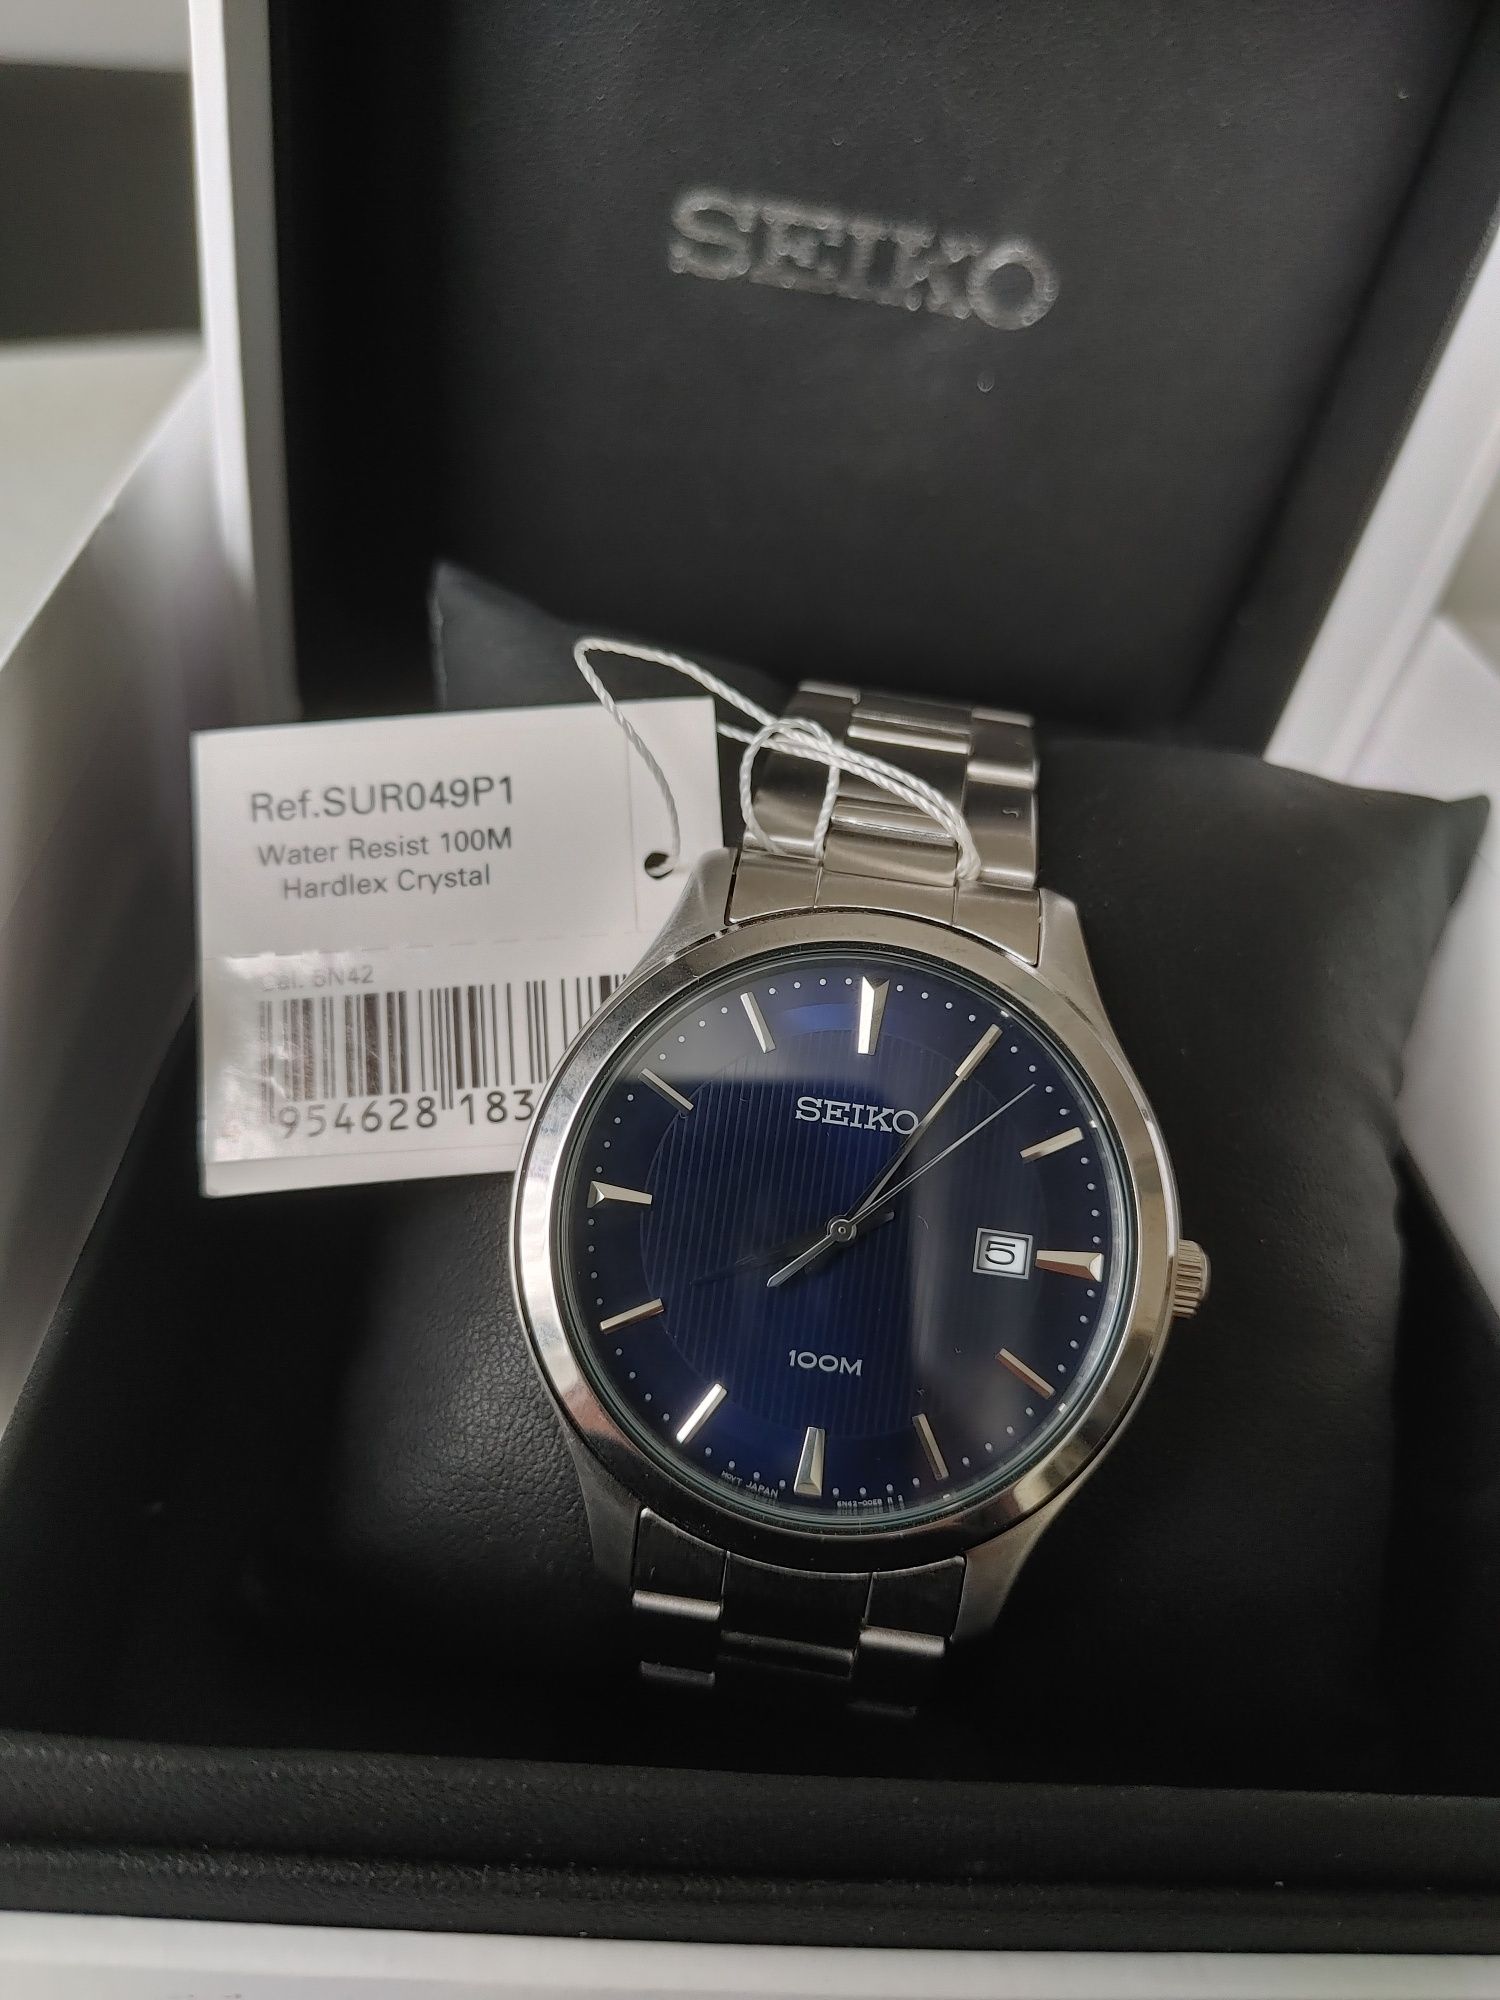 SEIKO часы, новые водонепроницаемые 100м в оригинальной упаковке